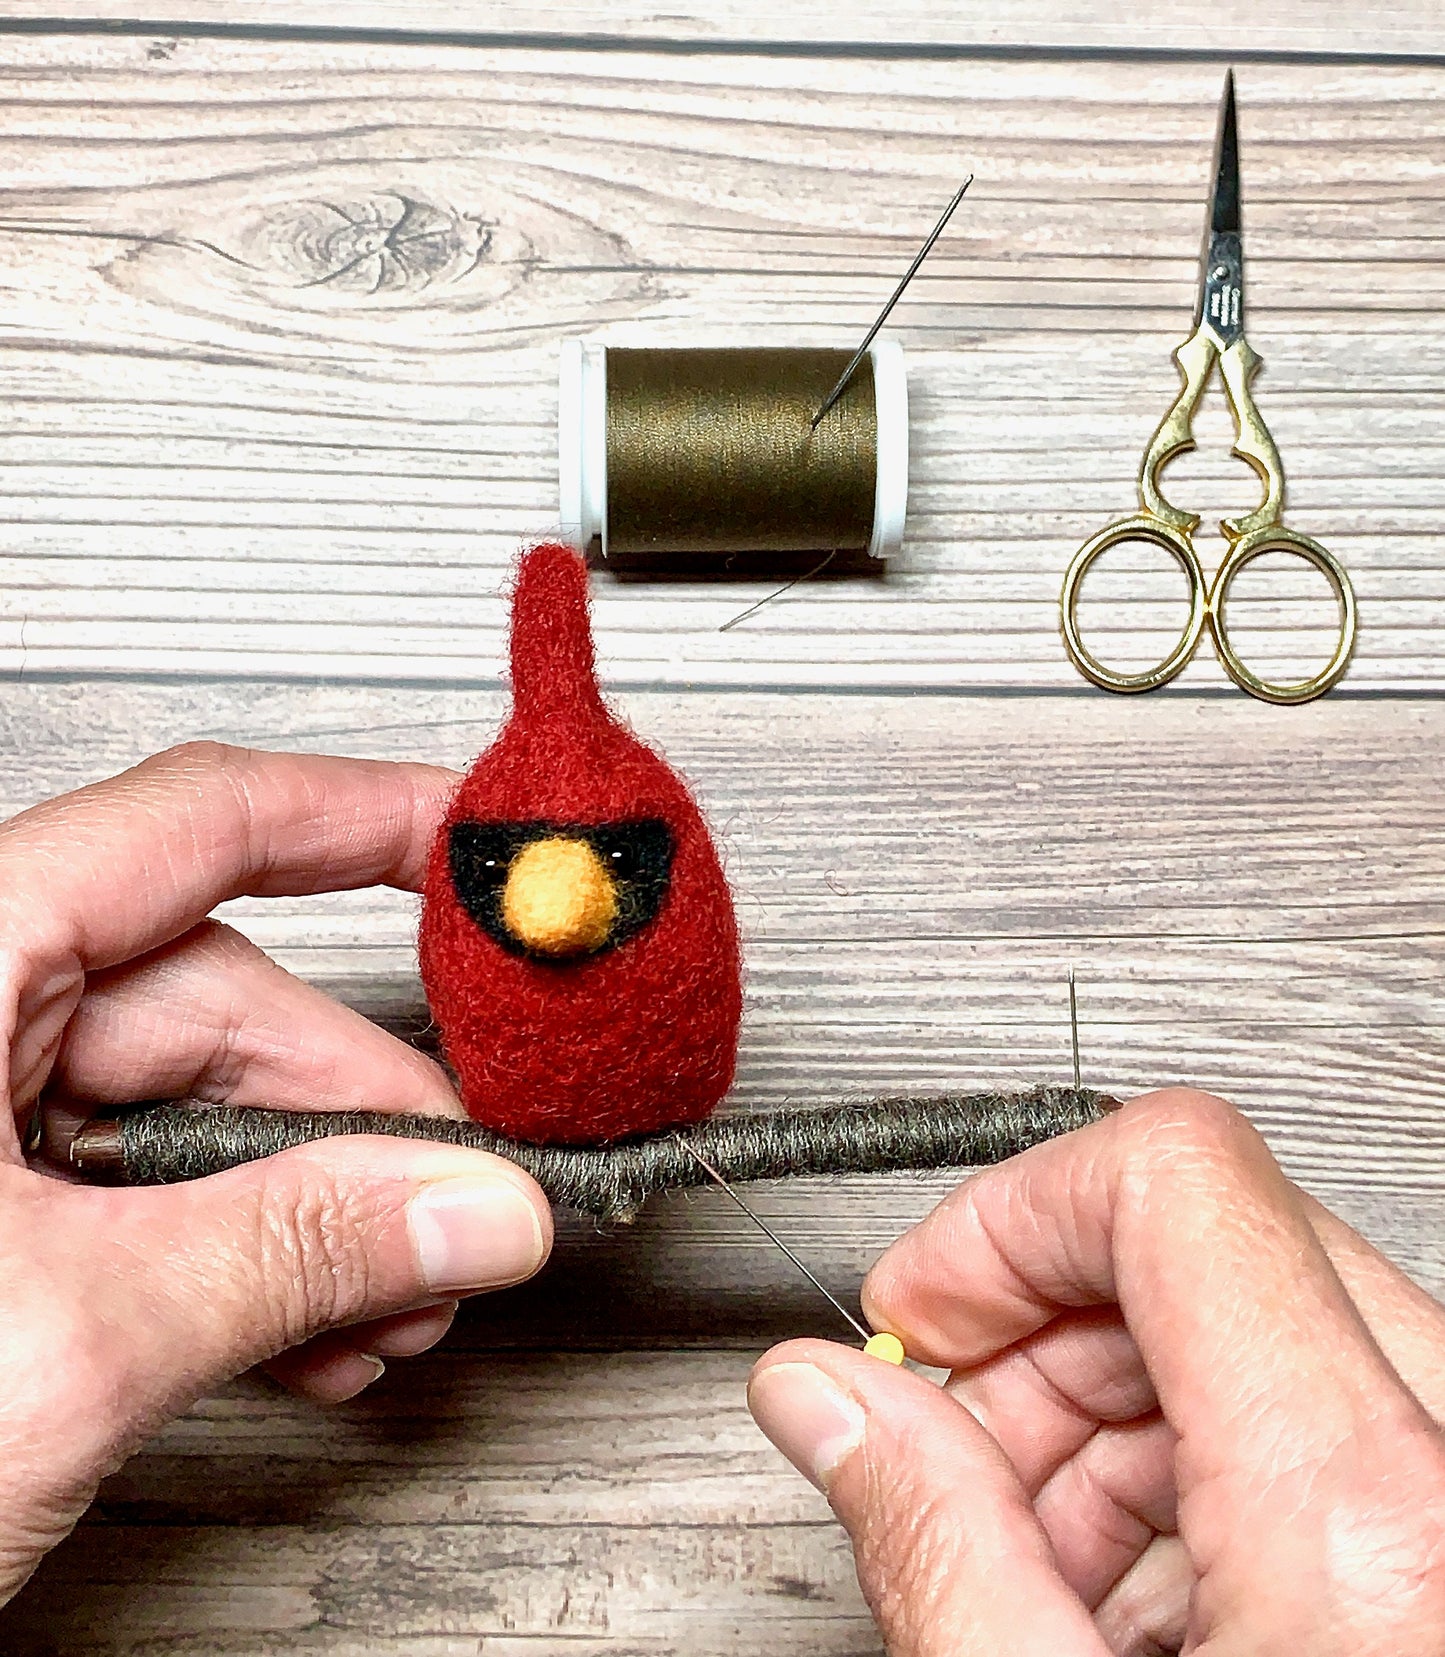 Needle Felting Kit for Beginner, Cardinal Christmas Ornament DIY Kit